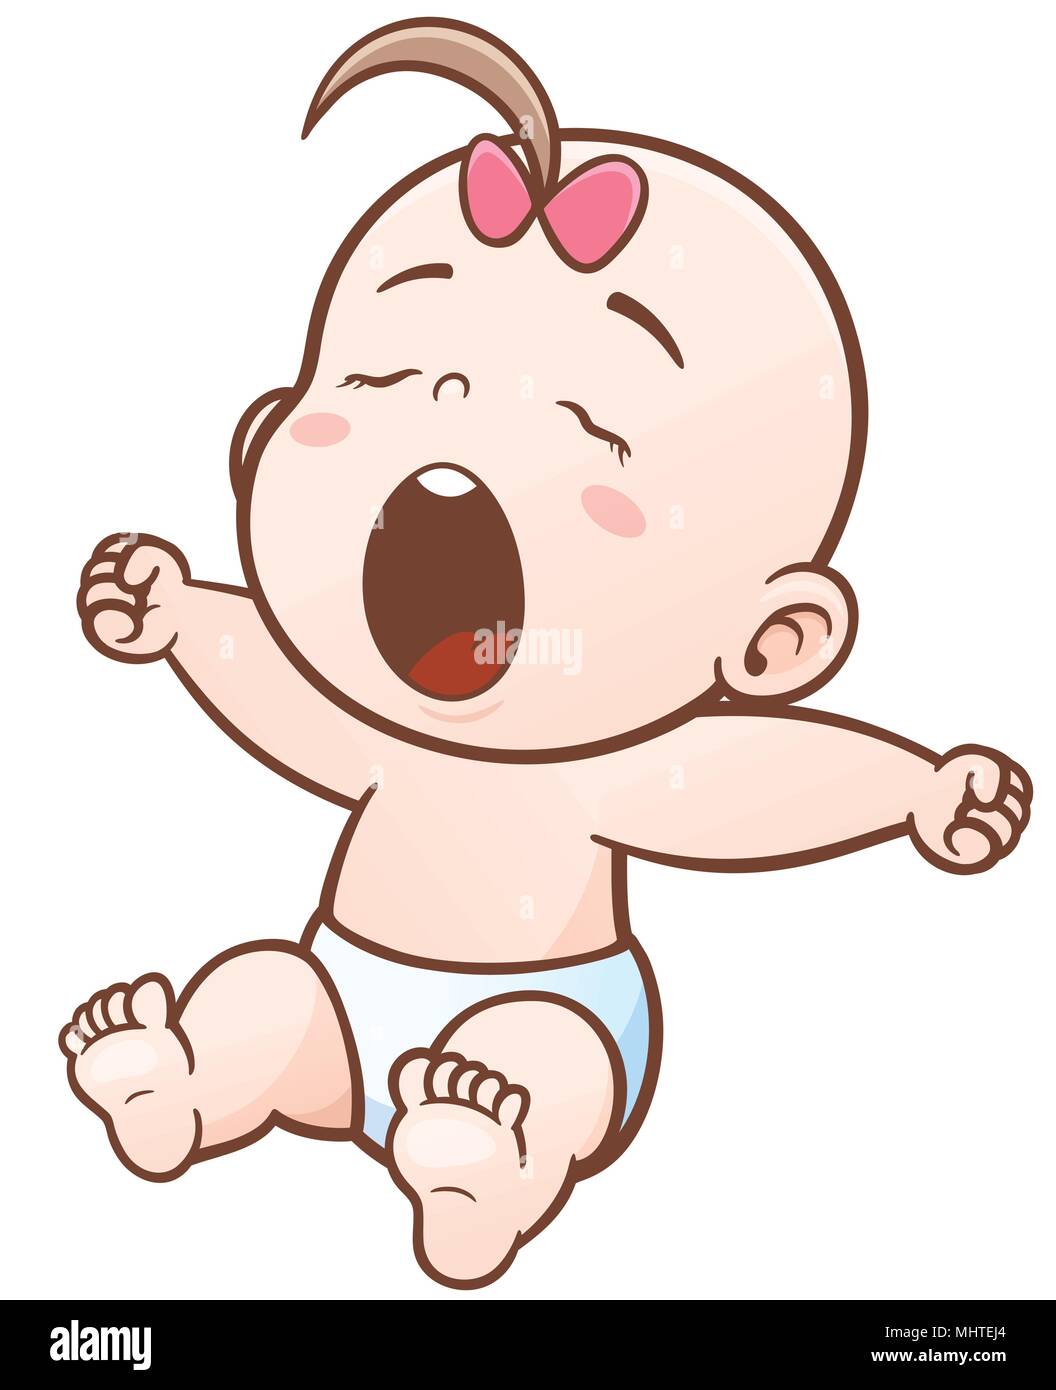 lindo icono de mameluco azul bebé en estilo de dibujo a mano de dibujos  animados 3806584 Vector en Vecteezy